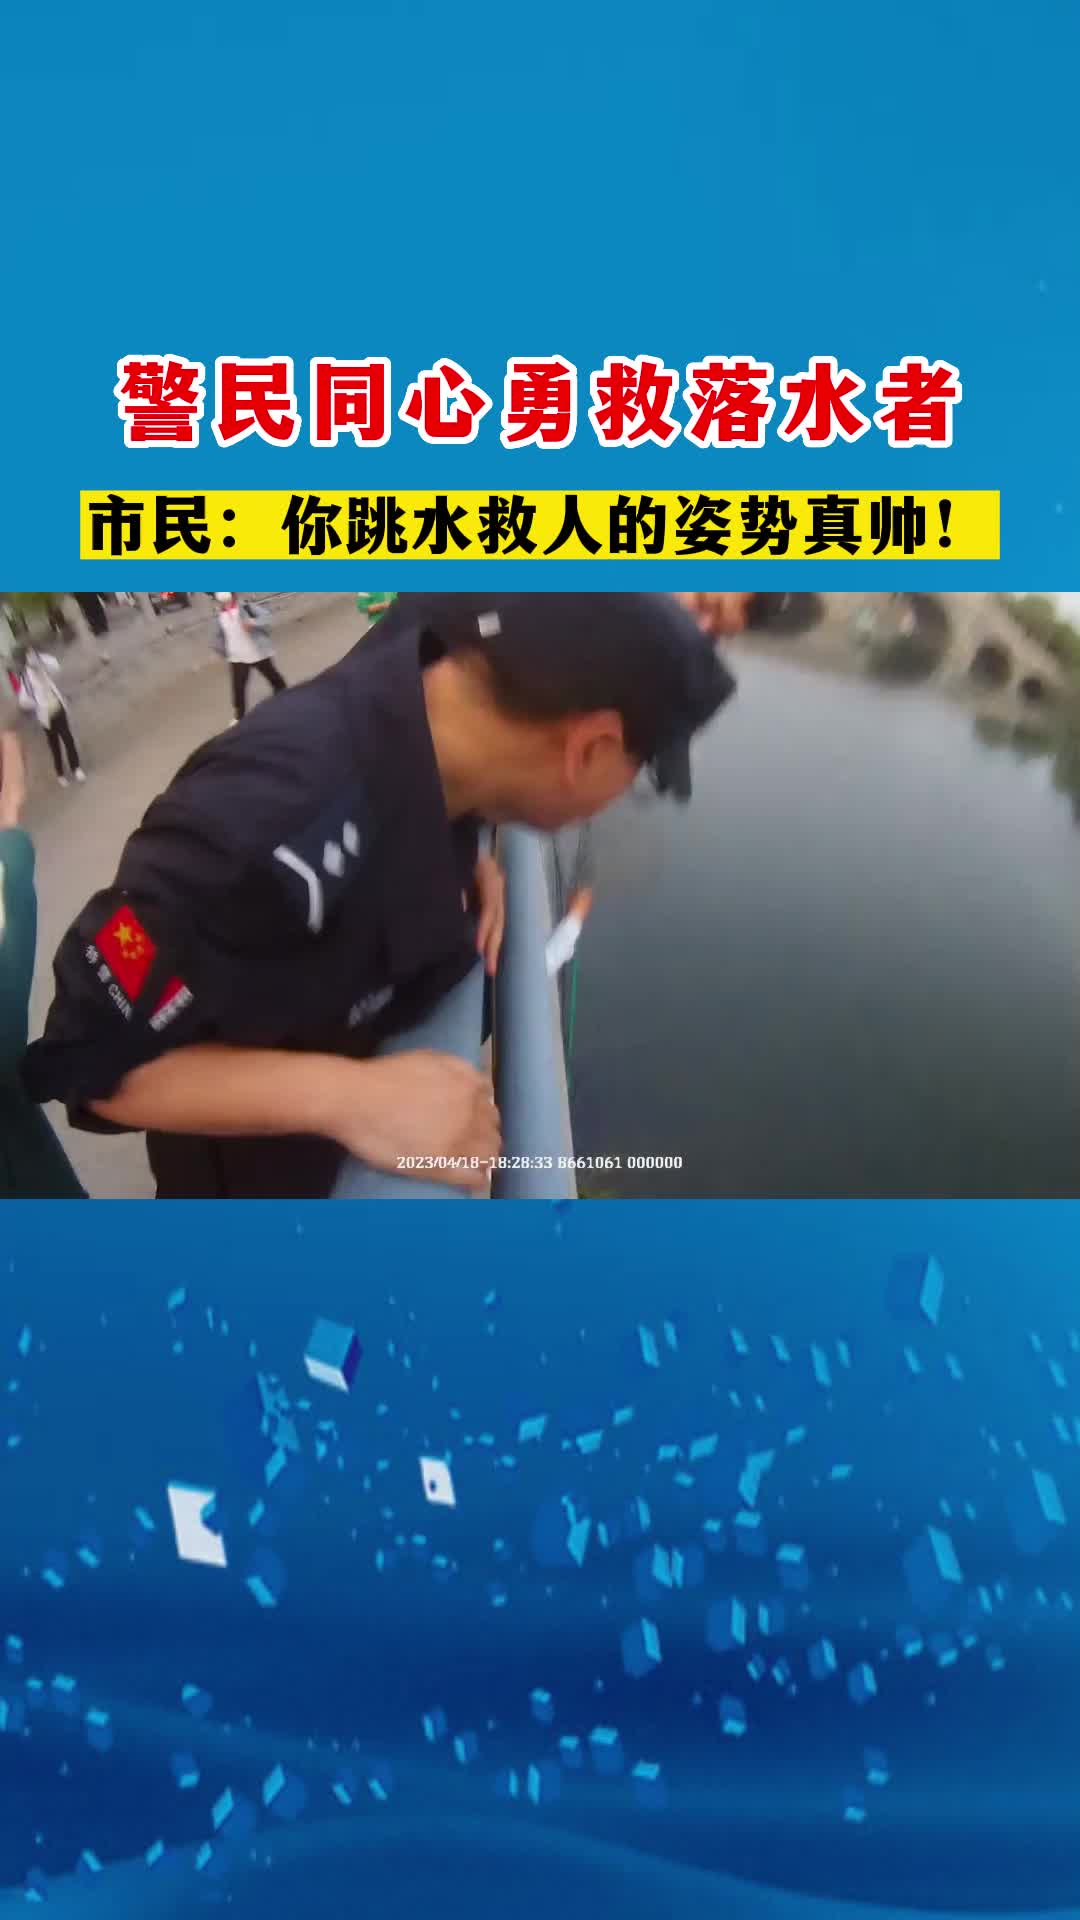 【邹视频·邹鲁民生】115秒| 警民同心勇救落水者